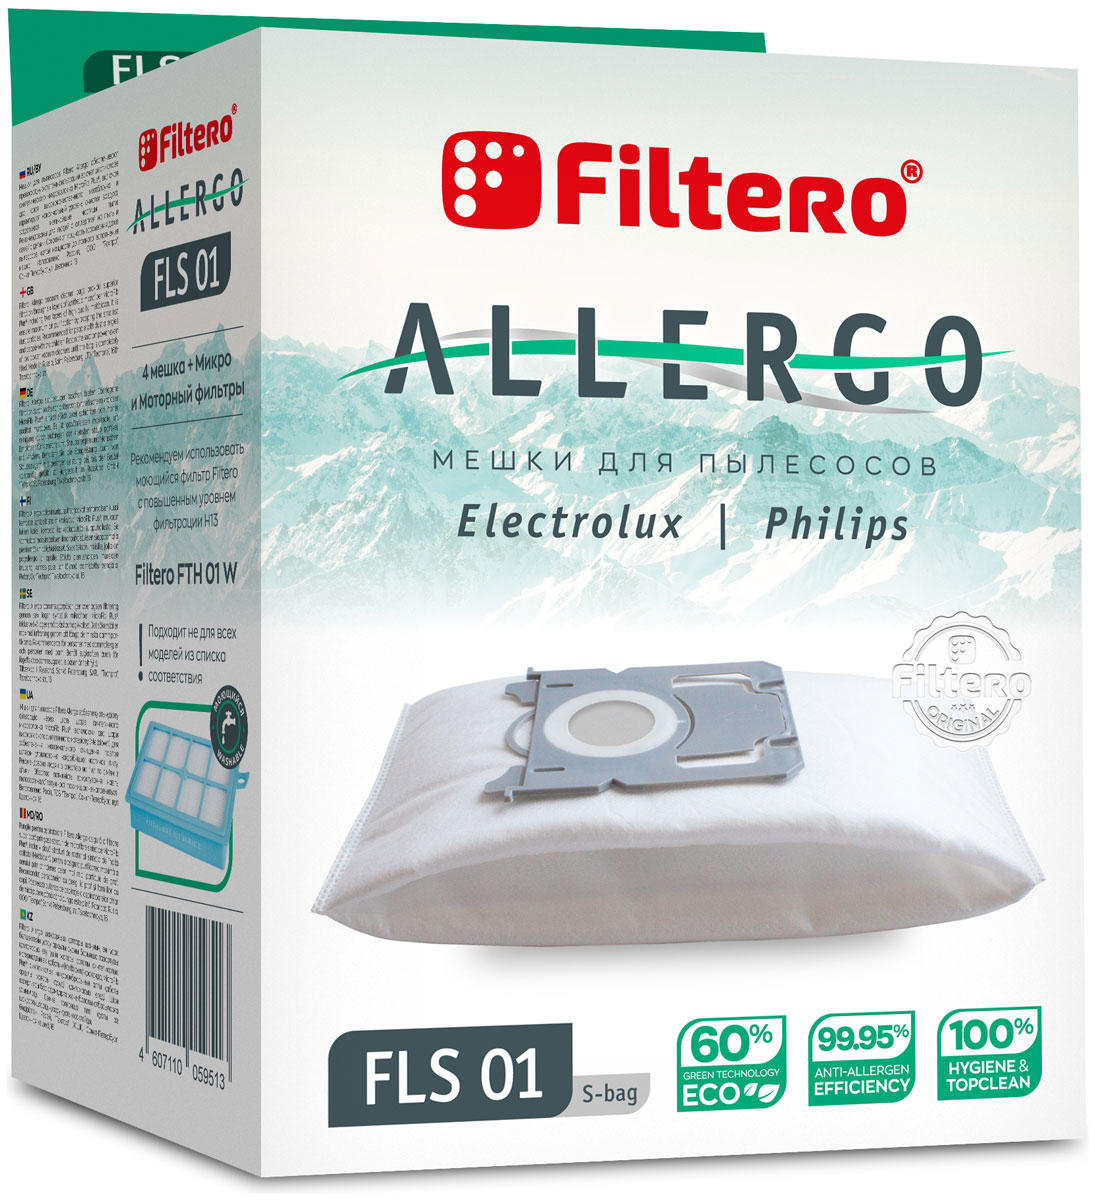 Пылесборники Filtero FLS 01 S-bag Allergo 4 шт. + моторный фильтр и микрофильтр цена и фото